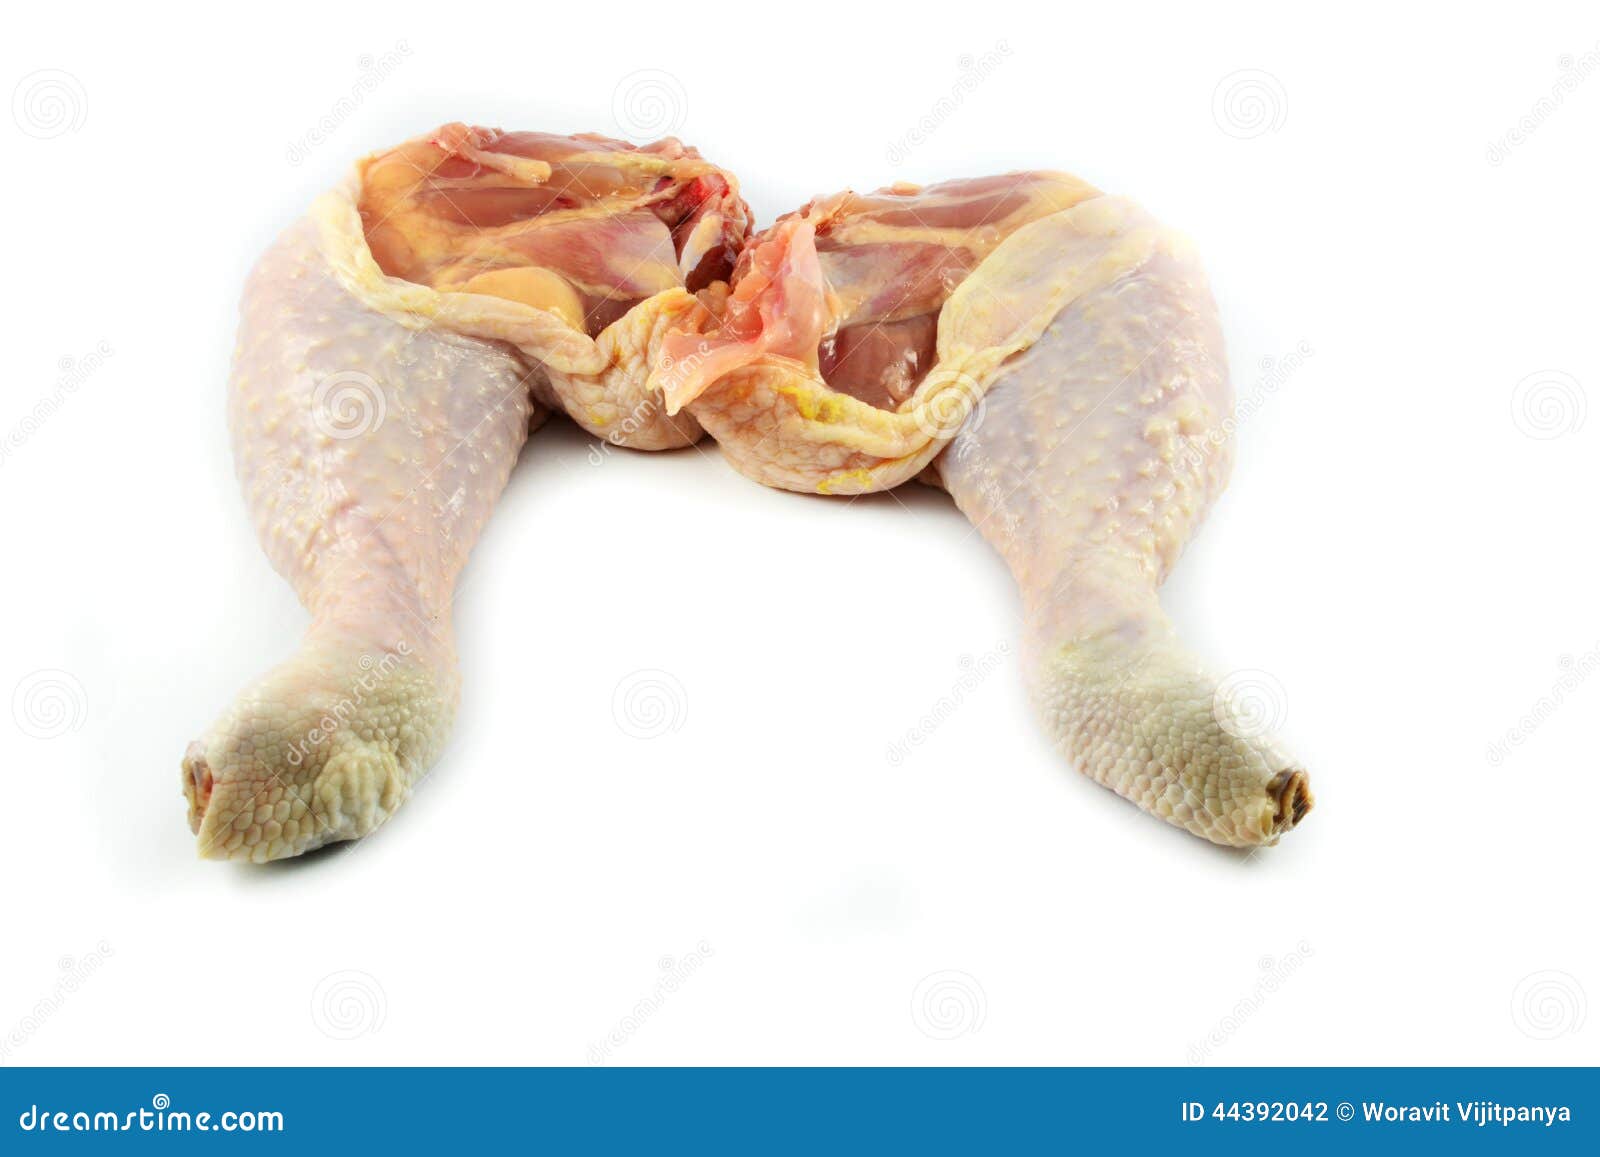 Surowy noga kurczak odizolowywający na białym tle